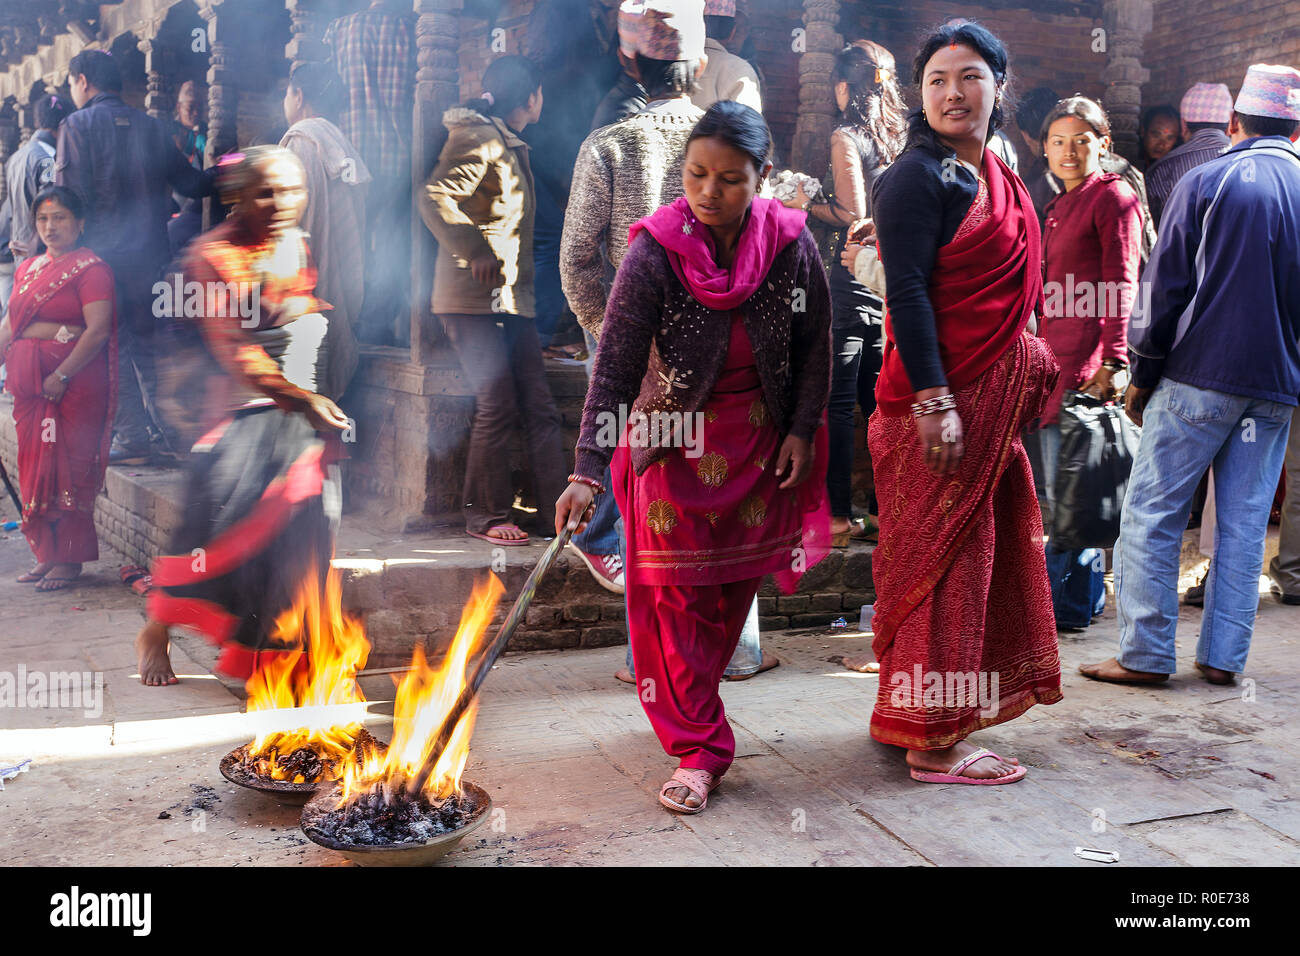 BHAKTAPUR, Nepal, November 24, 2010: Frauen sind zündende lange Stöcke in der Straße für einen hinduistischen religiösen Ritual in Bhaktapur, Nepal Stockfoto